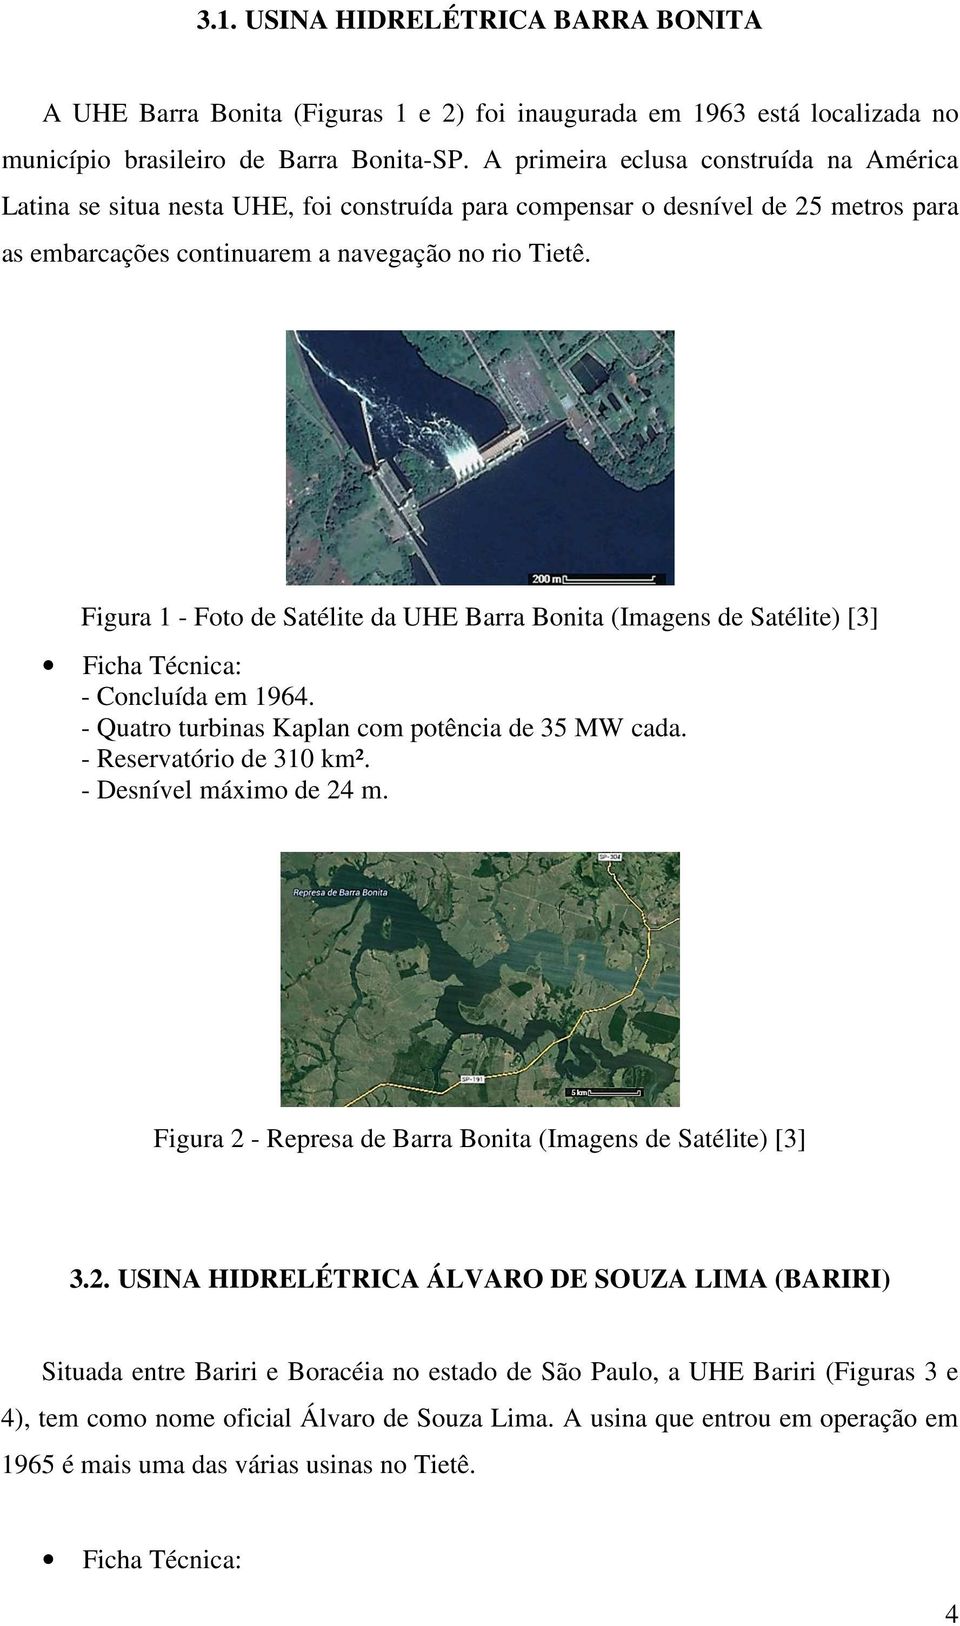 Figura 1 - Foto de Satélite da UHE Barra Bonita (Imagens de Satélite) [3] Ficha Técnica: - Concluída em 1964. - Quatro turbinas Kaplan com potência de 35 MW cada. - Reservatório de 310 km².